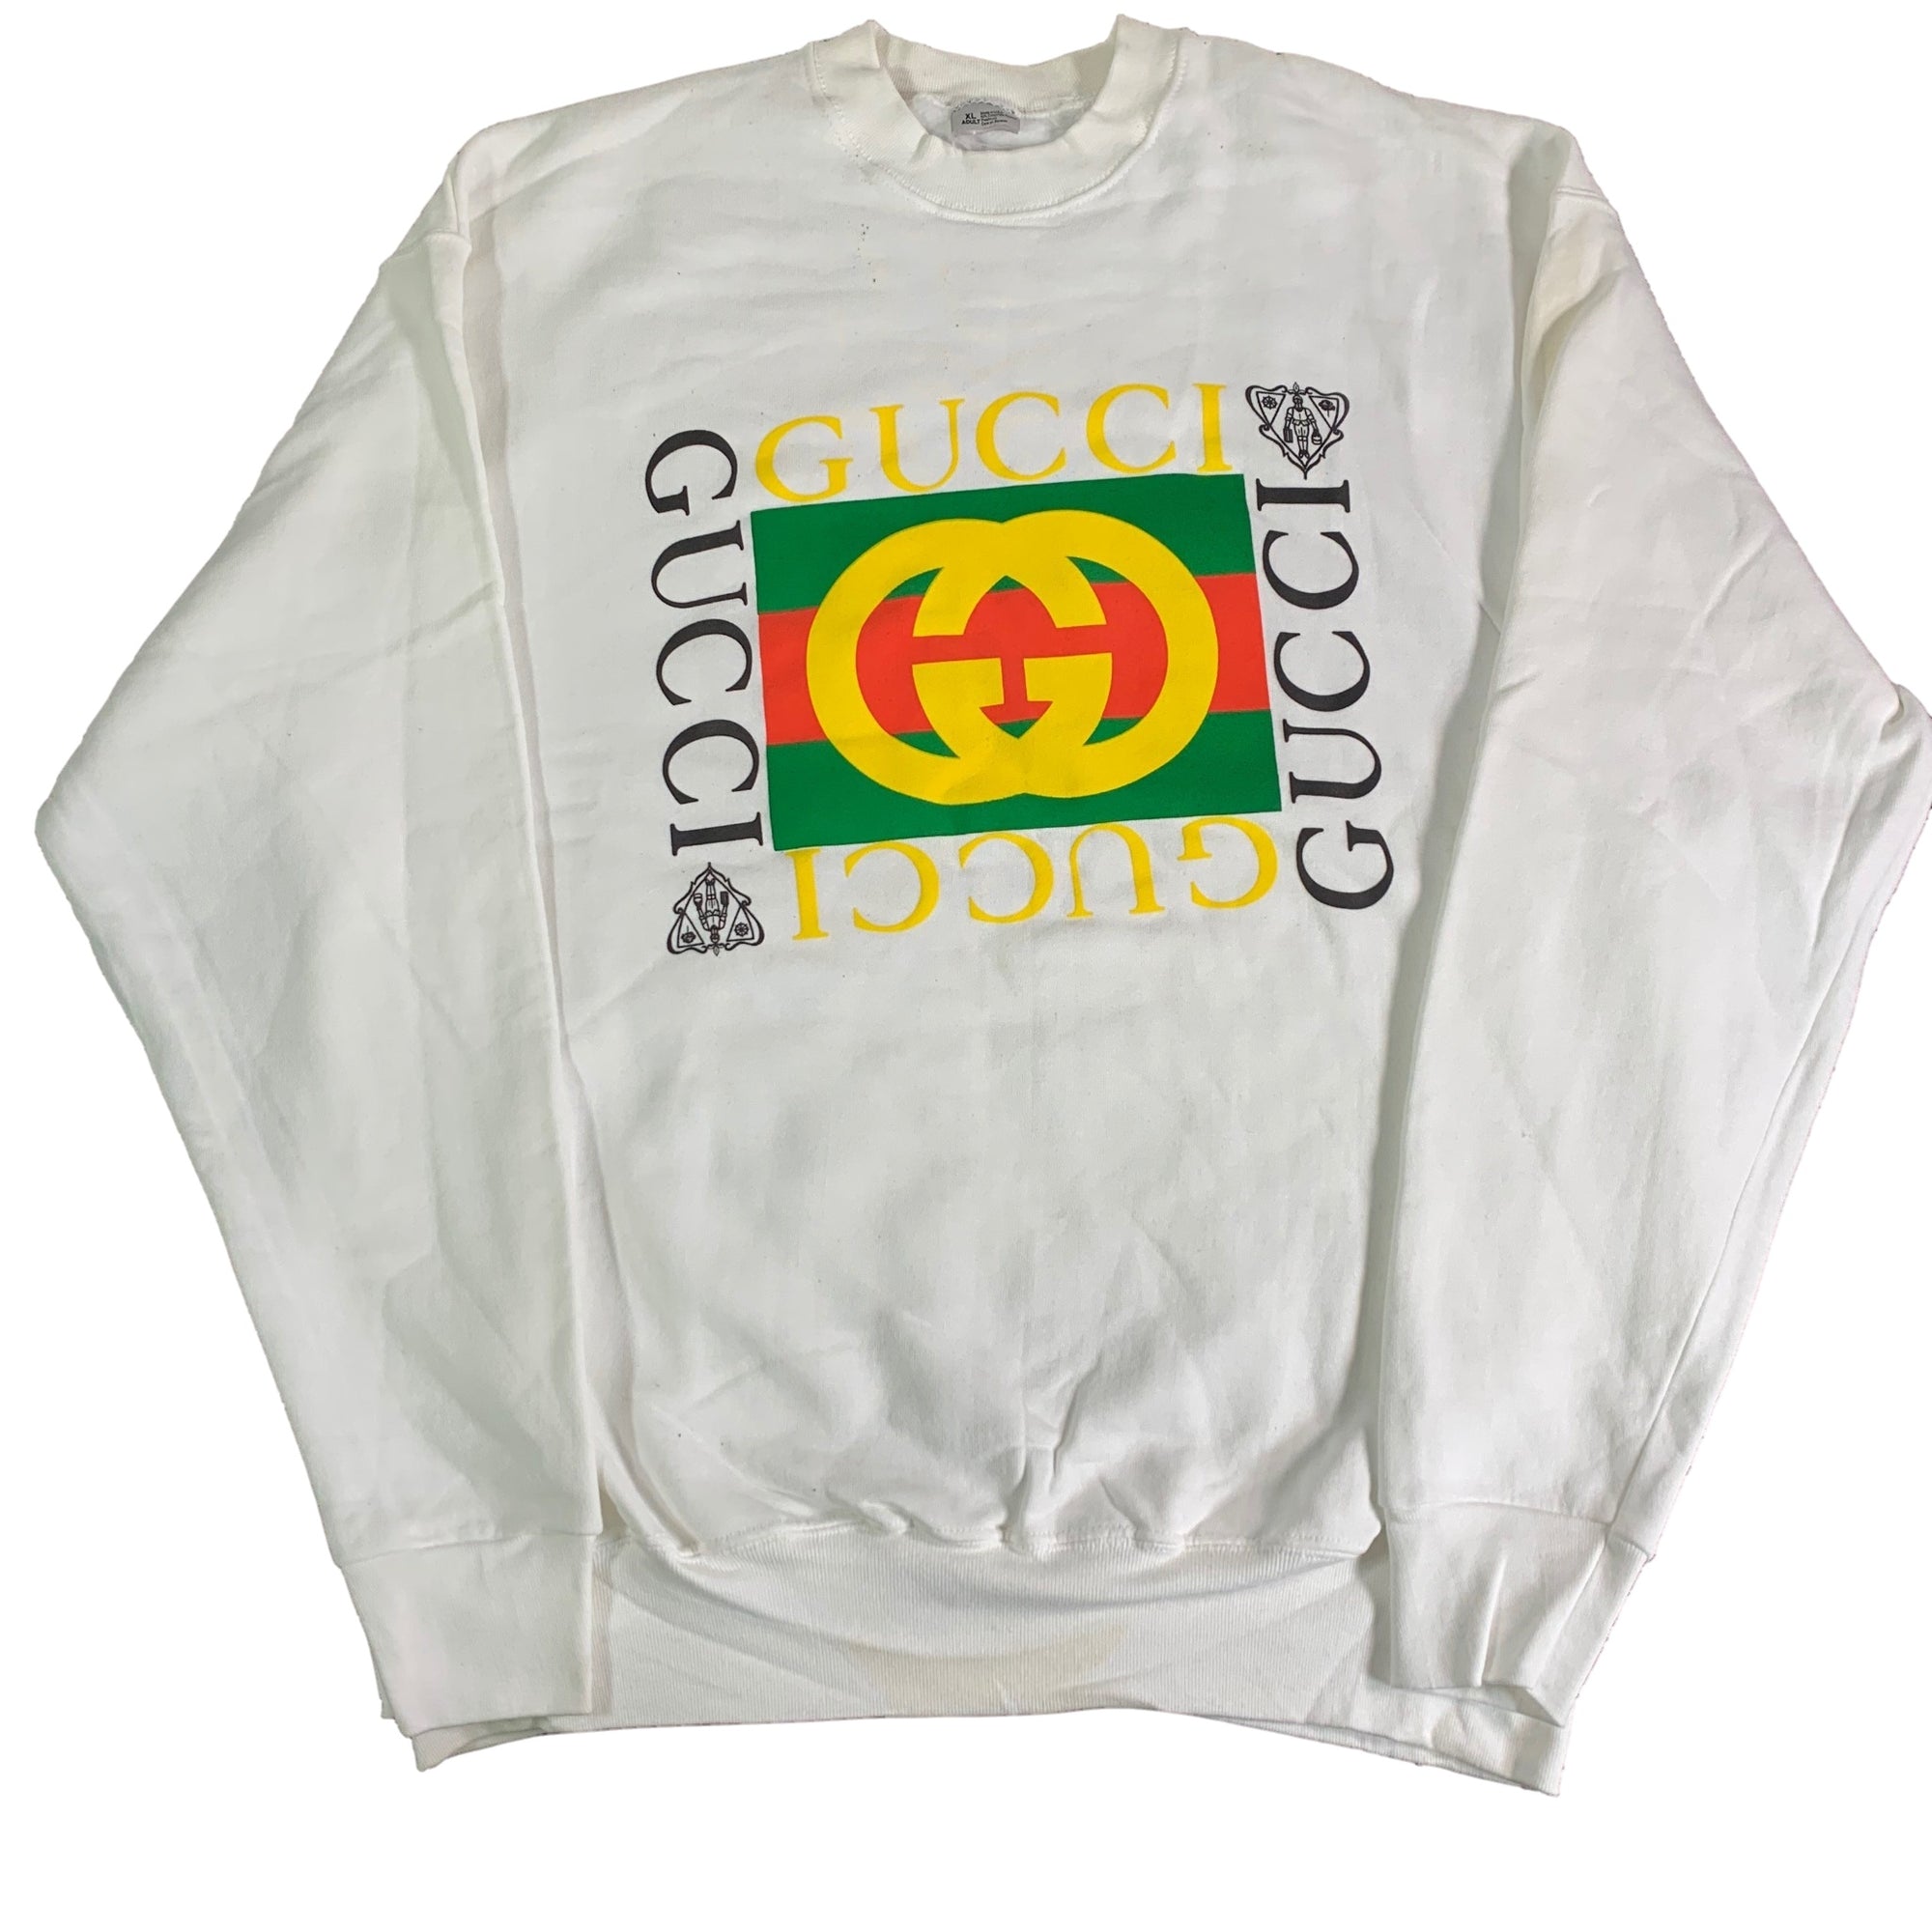 Vintage Gucci "Bootleg" Crewneck Sweatshirt - jointcustodydc